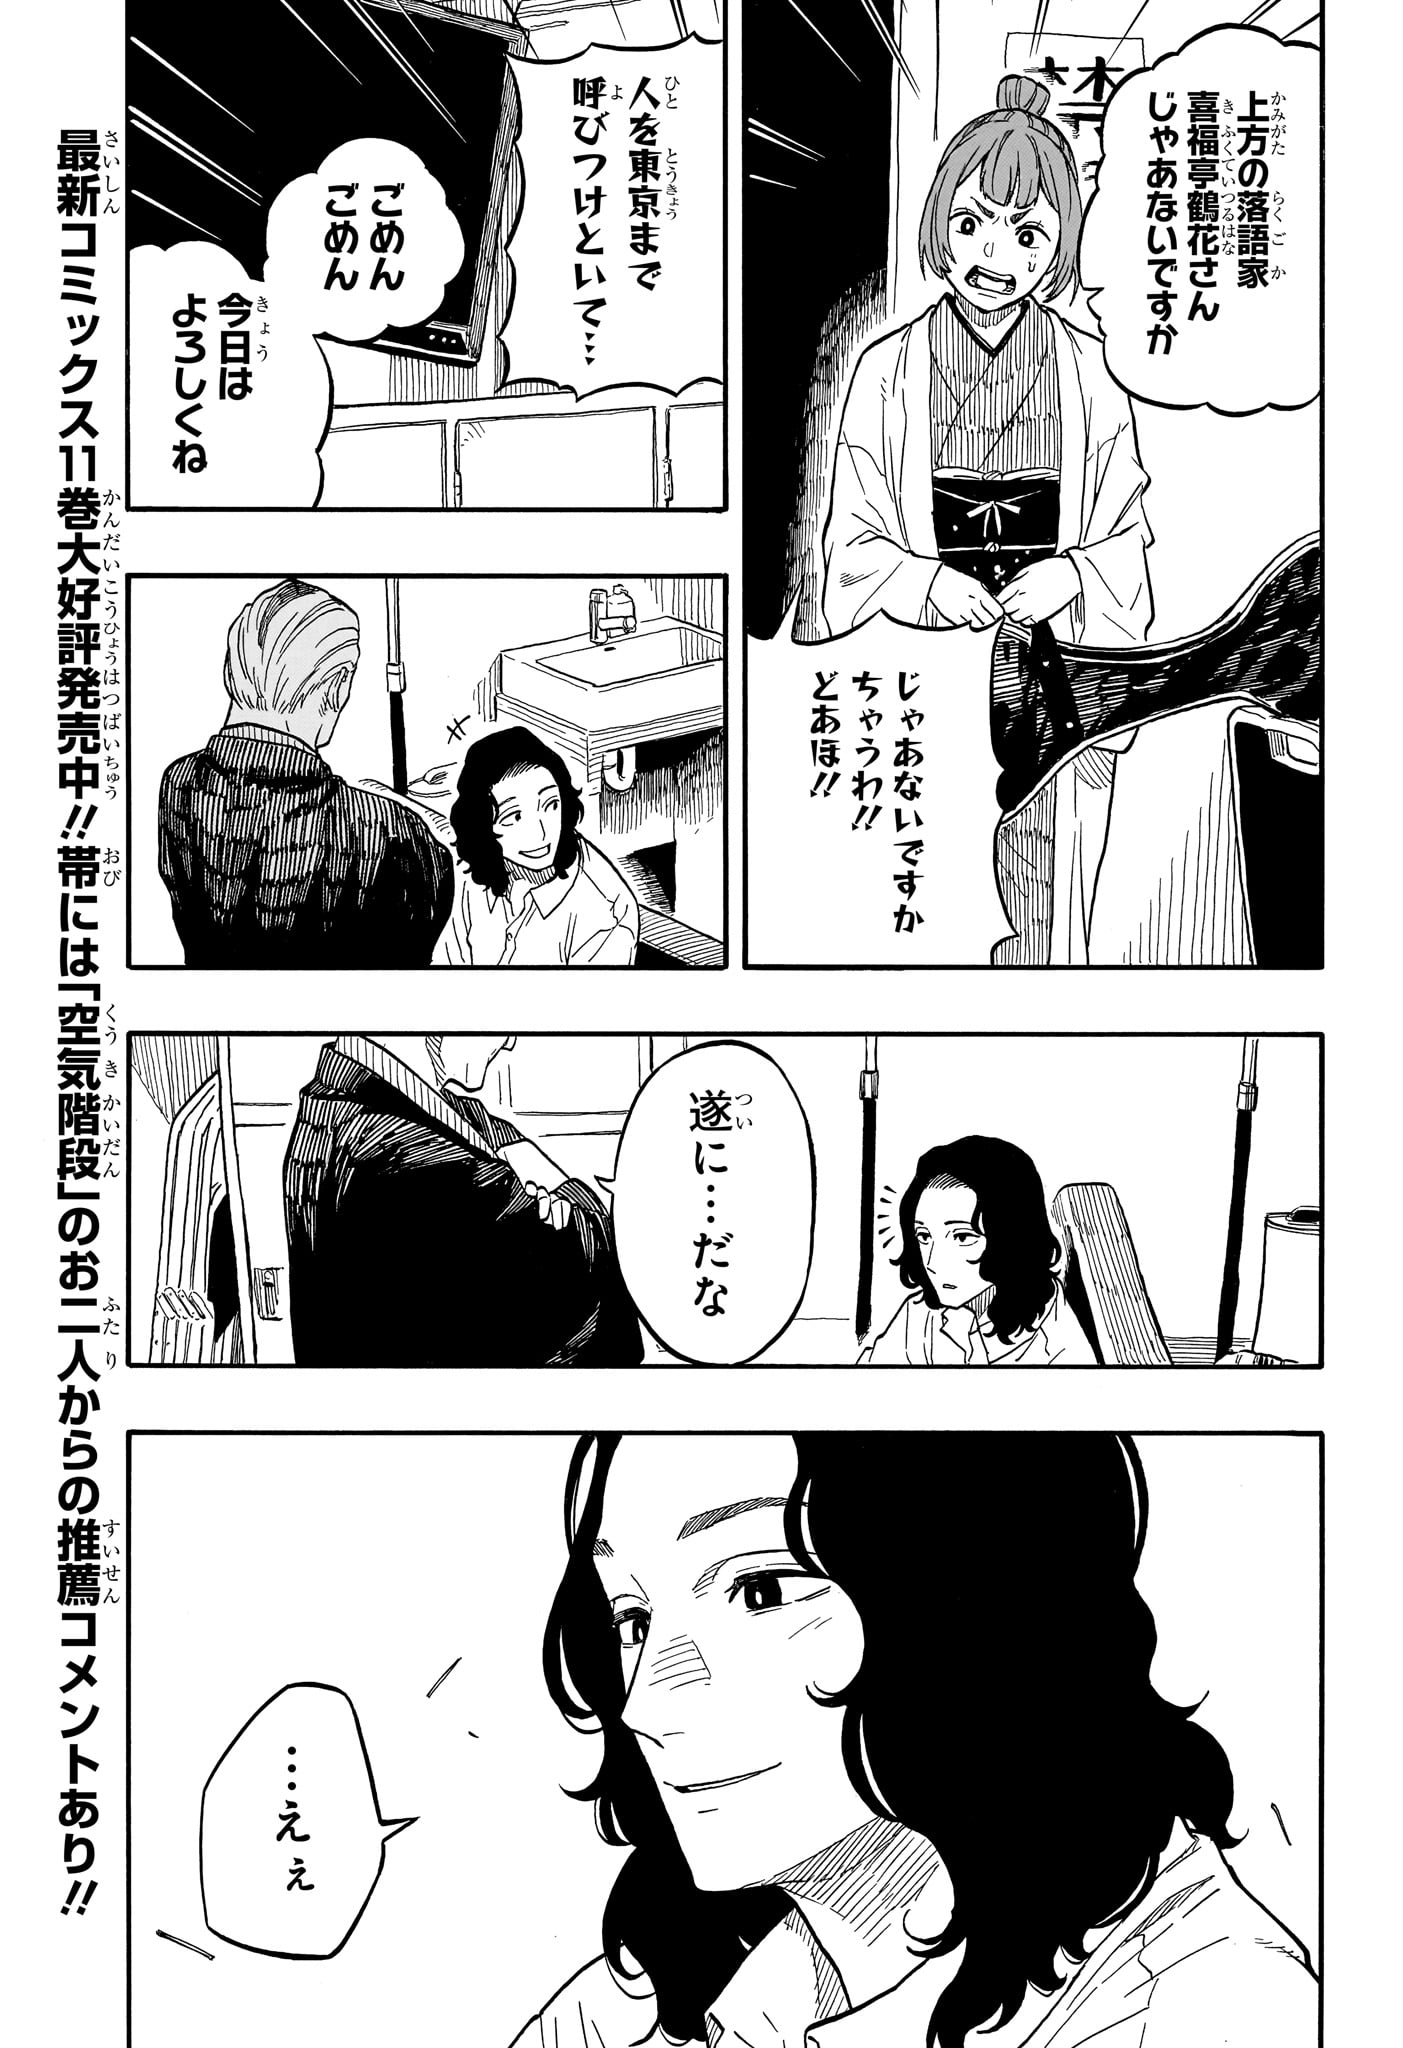 Akane-Banashi - Chapter 109 - Page 5